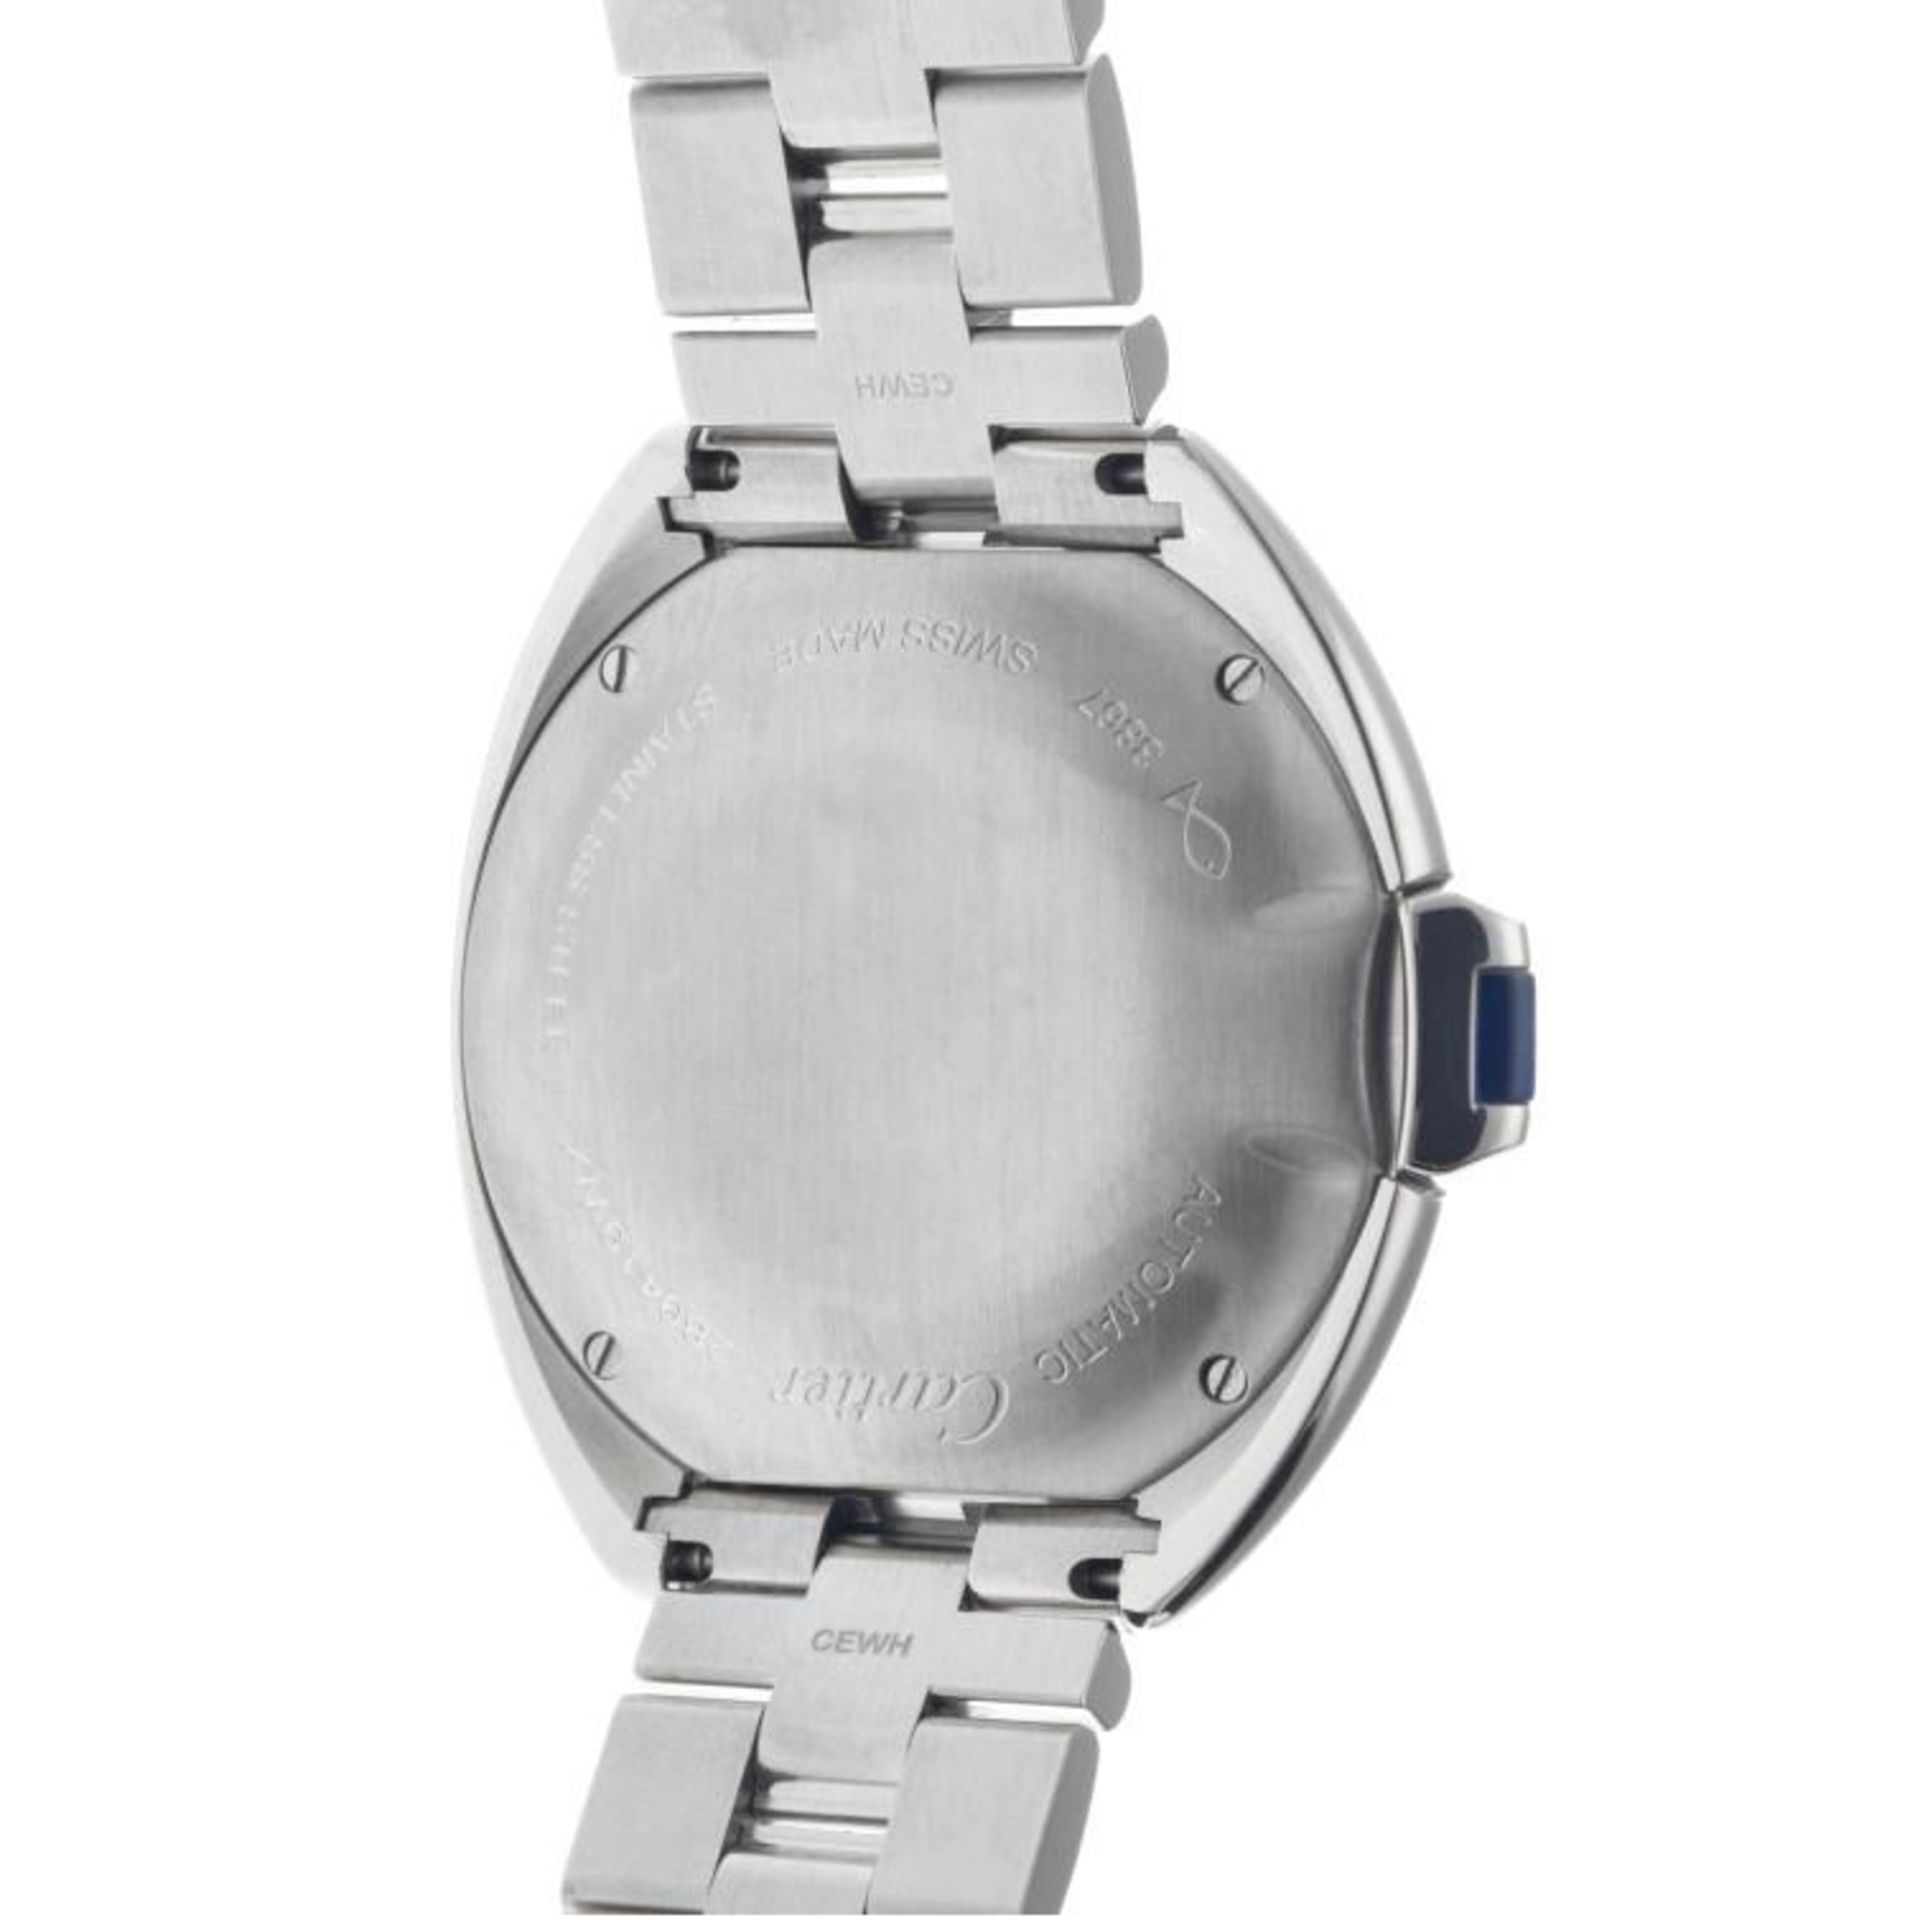 Cartier Clé WSCL0005 - Men's watch - 2020. - Image 9 of 12